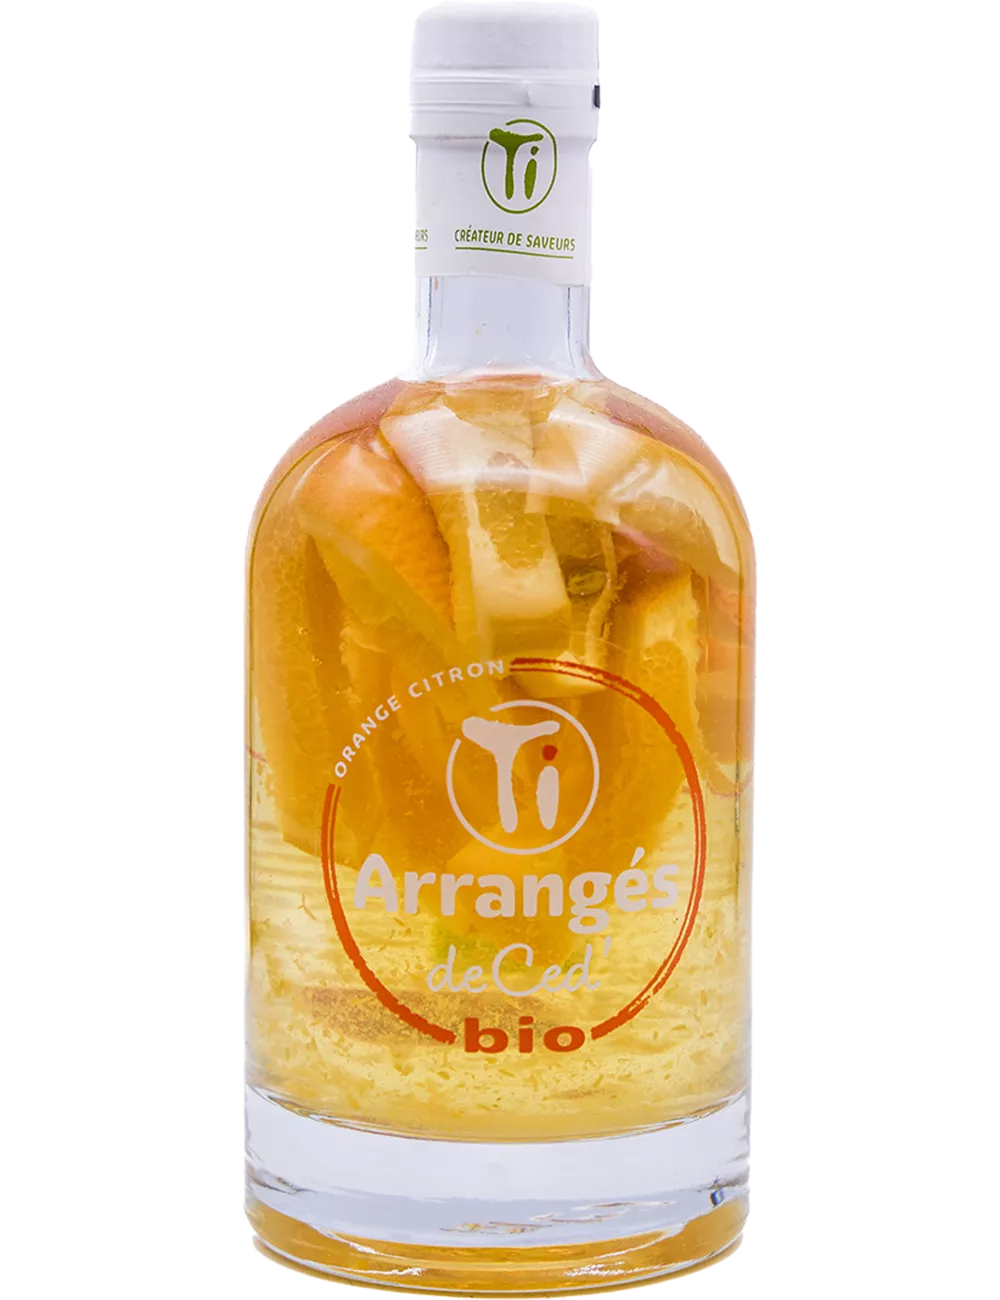 Ti Ced - Orange Citron Bio  - Rhum arrangé